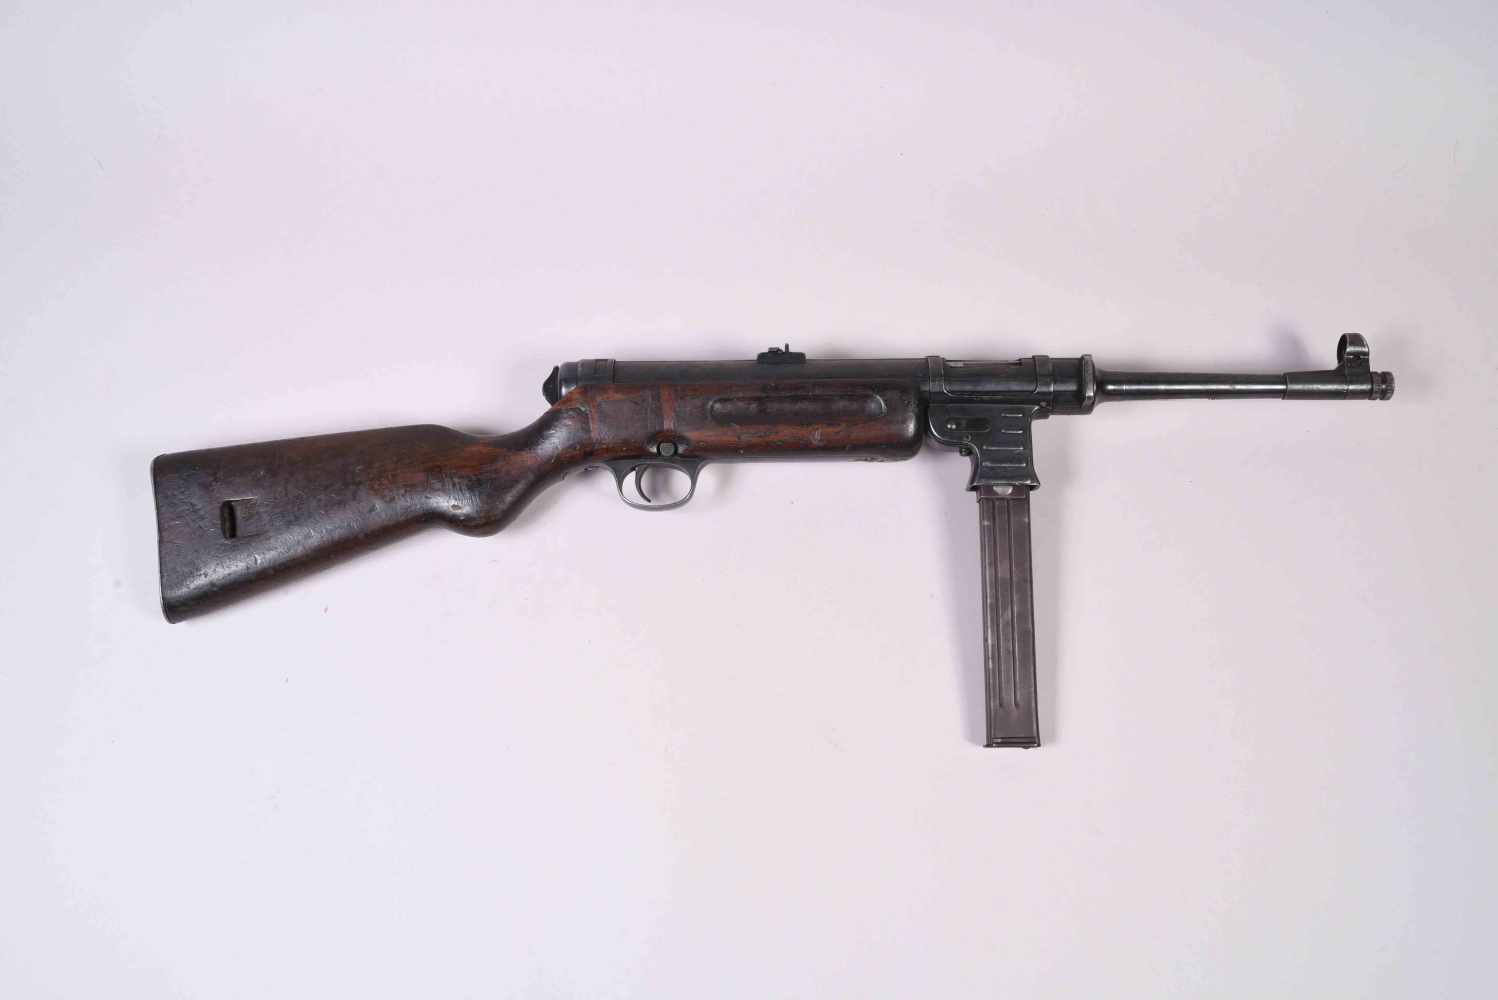 All- Pistolet Mitrailleur MP 41. Système Schmeisser, fabrication Haenel à Sulh. Crosse en bois et